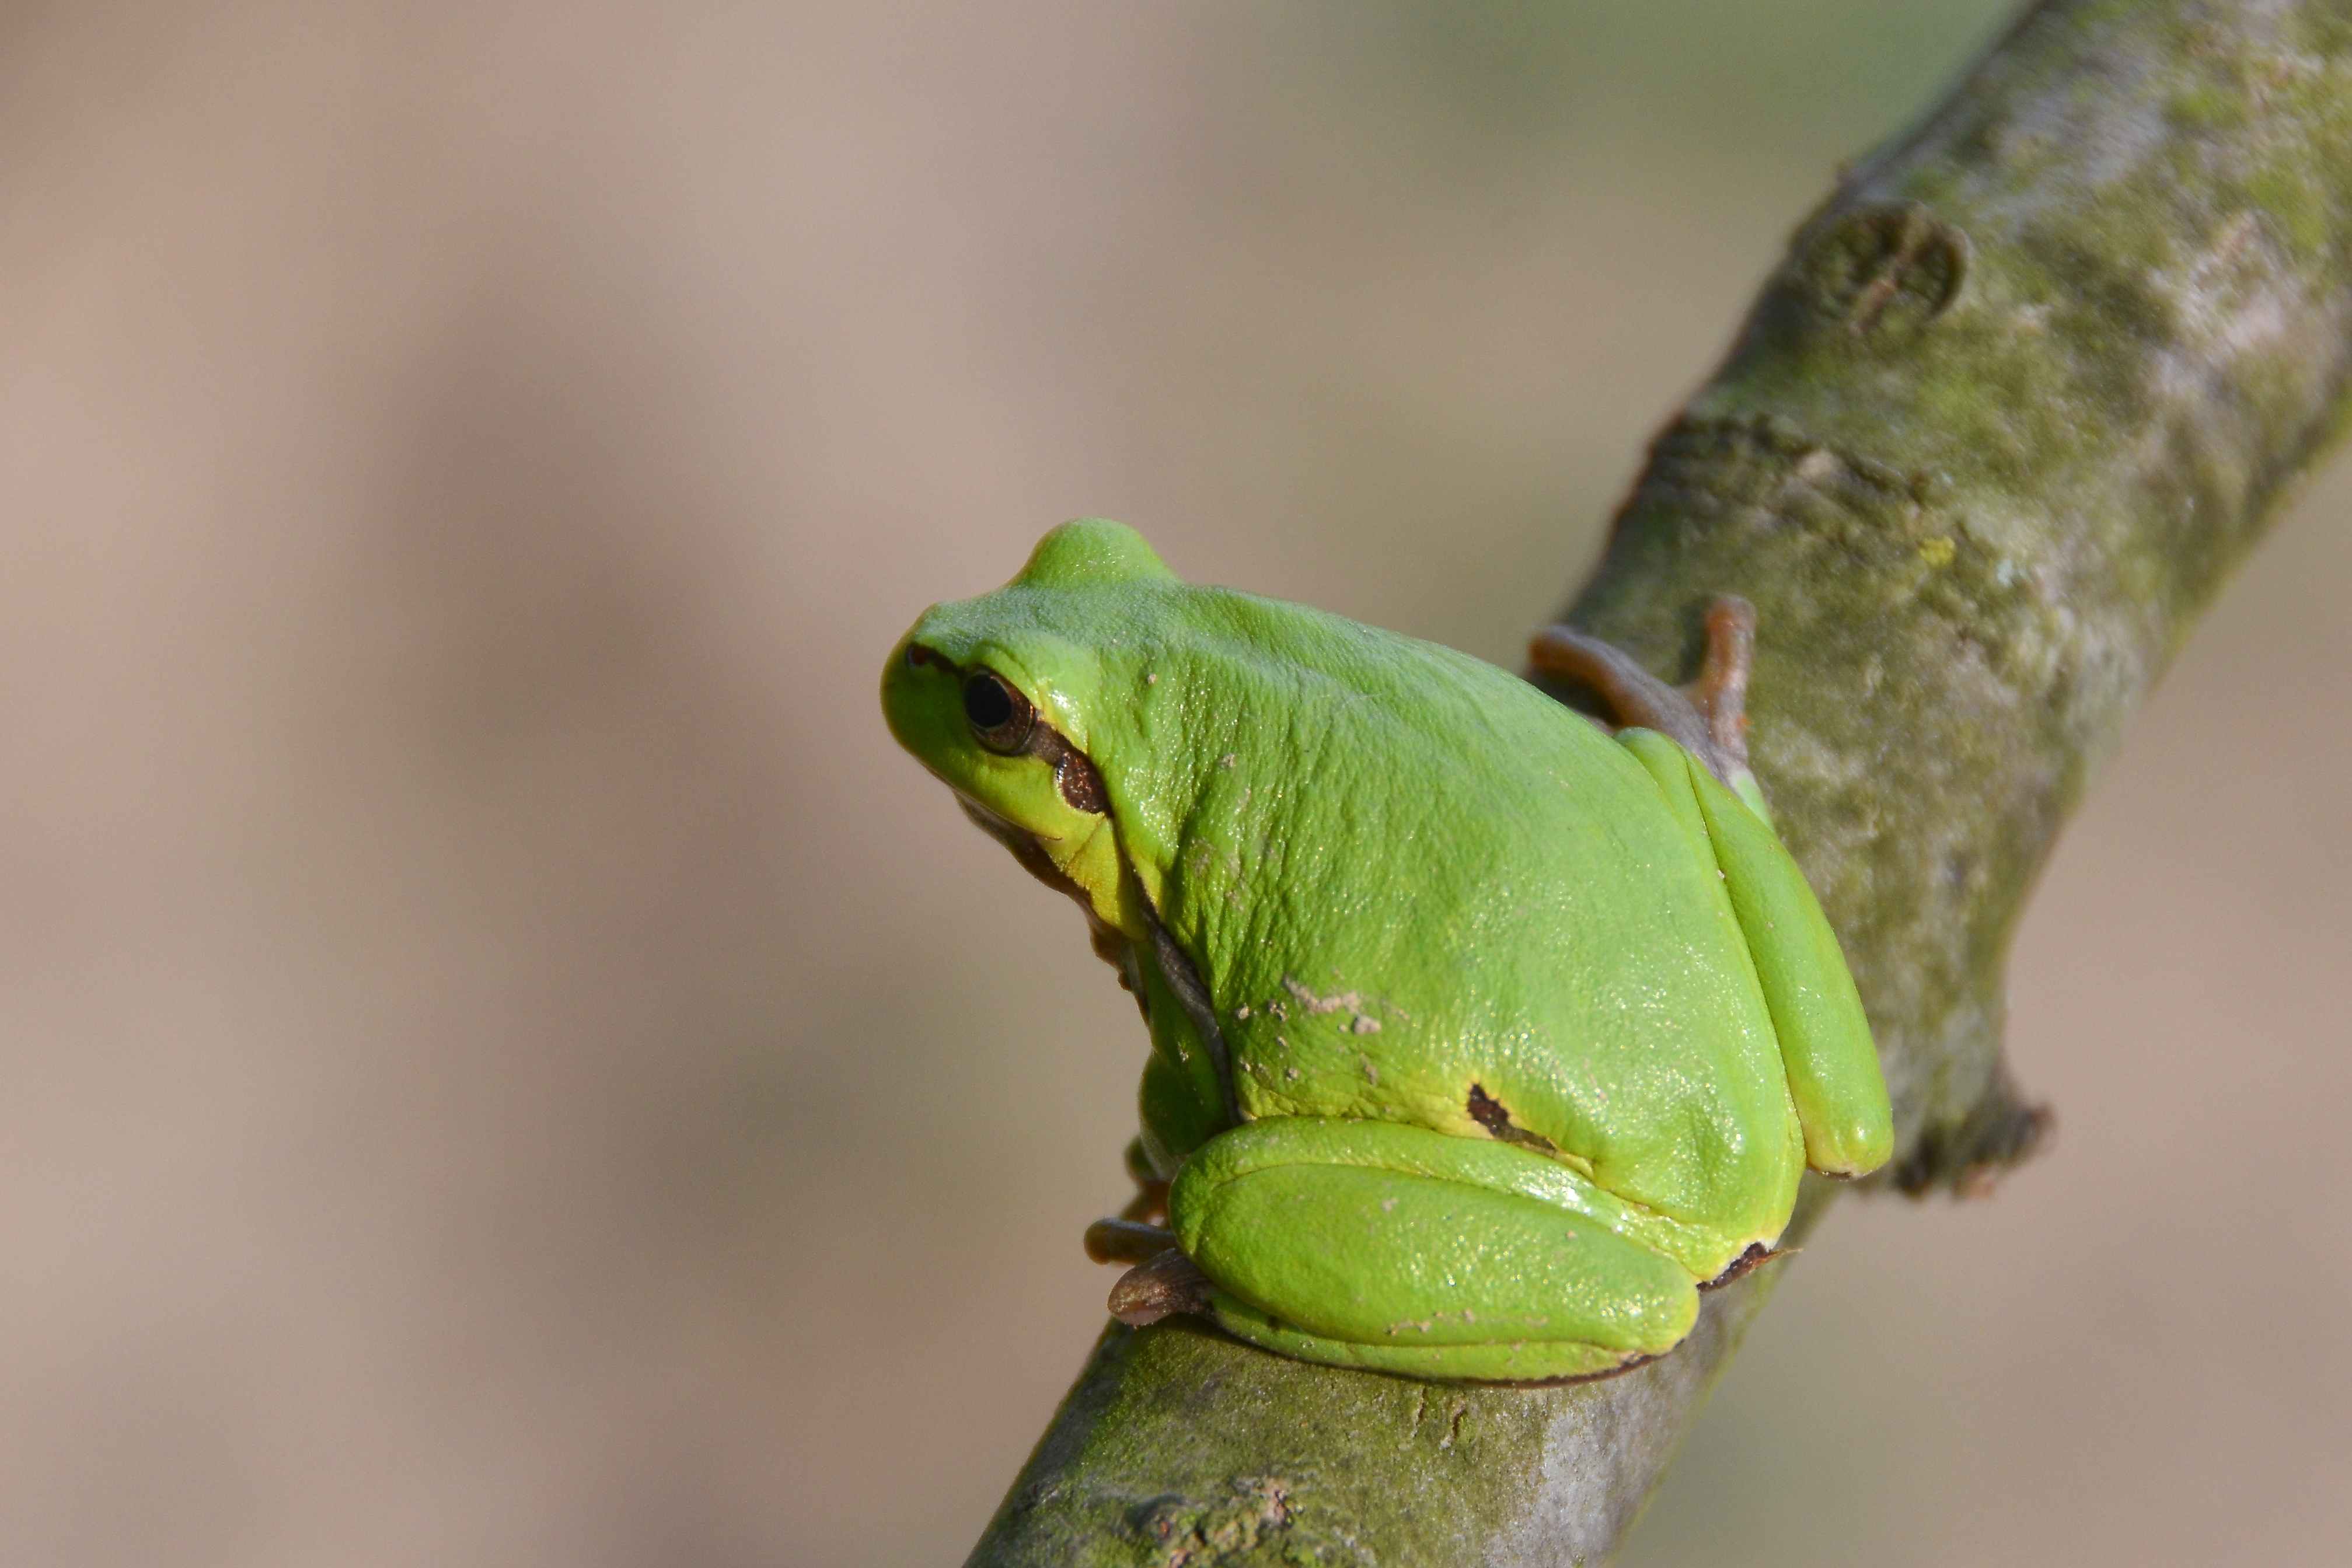 Rosnička zelená (Hyla arborea) – celkom určite najpopulárnejší obojživelník. Hovorí sa jej aj „stromová žaba“, pretože mimo obdovia zimovania a párenia trávi táto žaba takmer celý čas na tzv. sprievodnej zeleni (kry a stromy), alebo je bežné ju vidieť na pálke, či trsti.